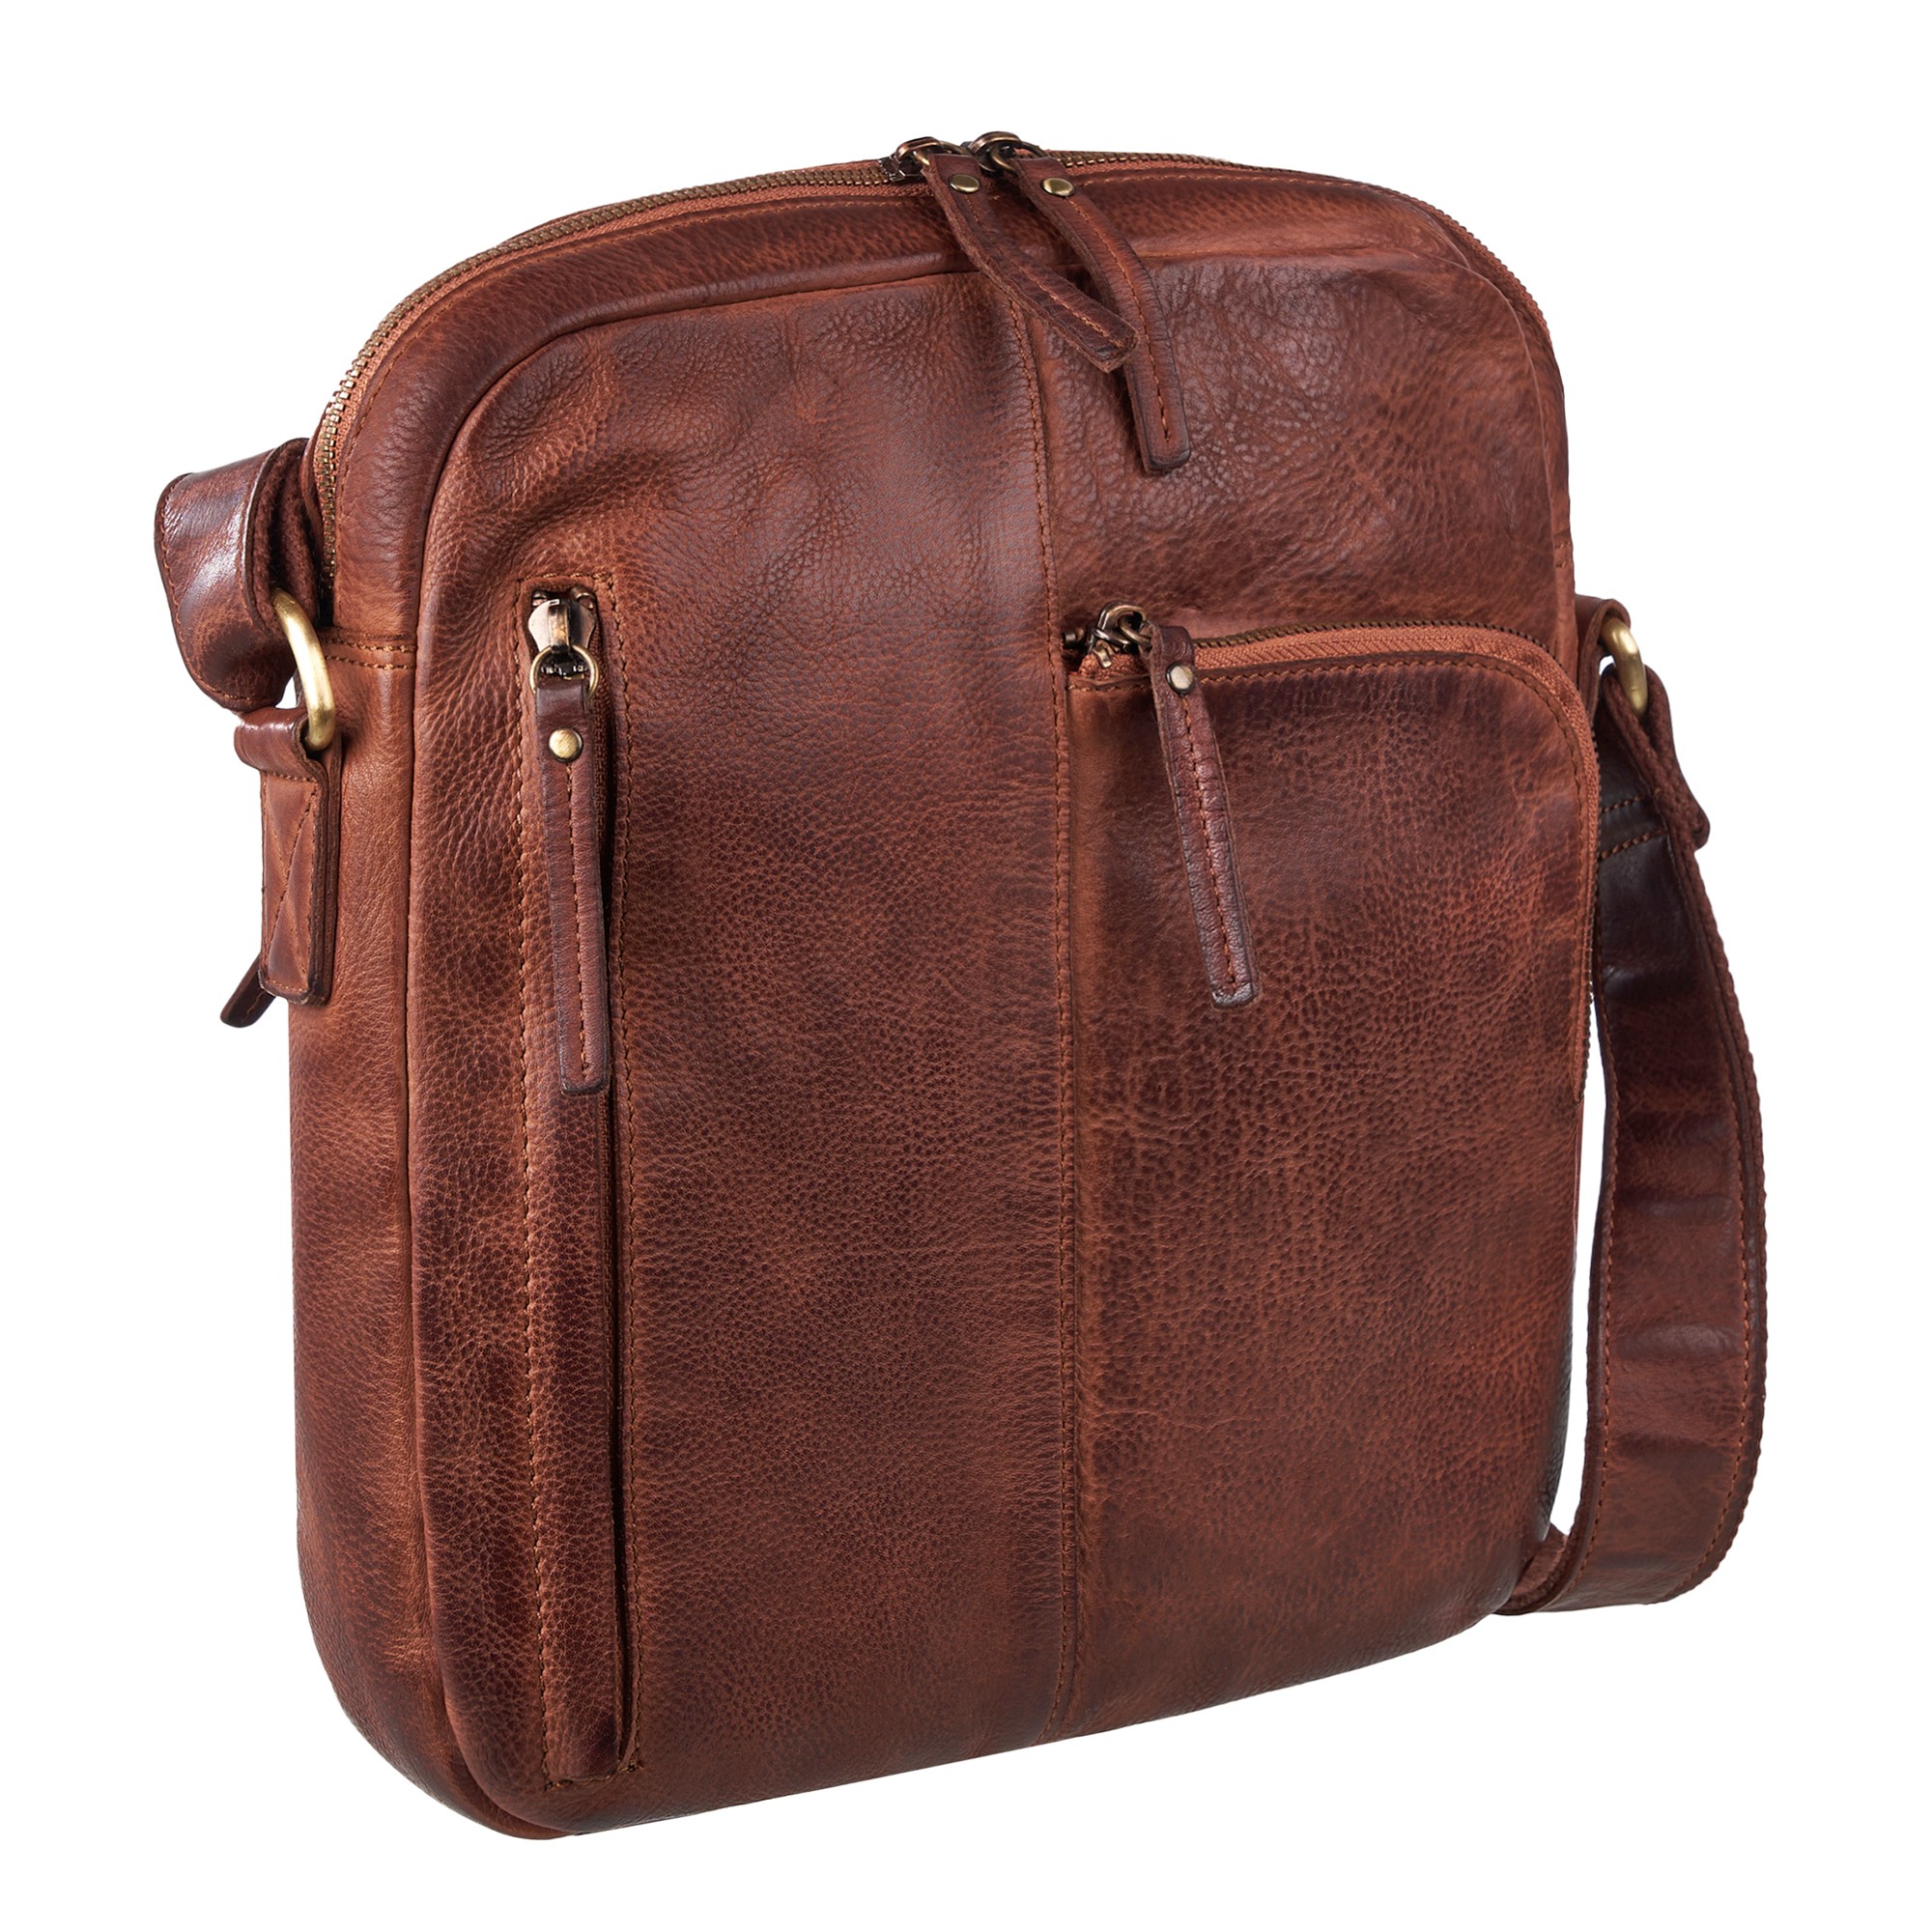 Др.Коффер M402741-248-05 сумка через плечо, цвет коричневый